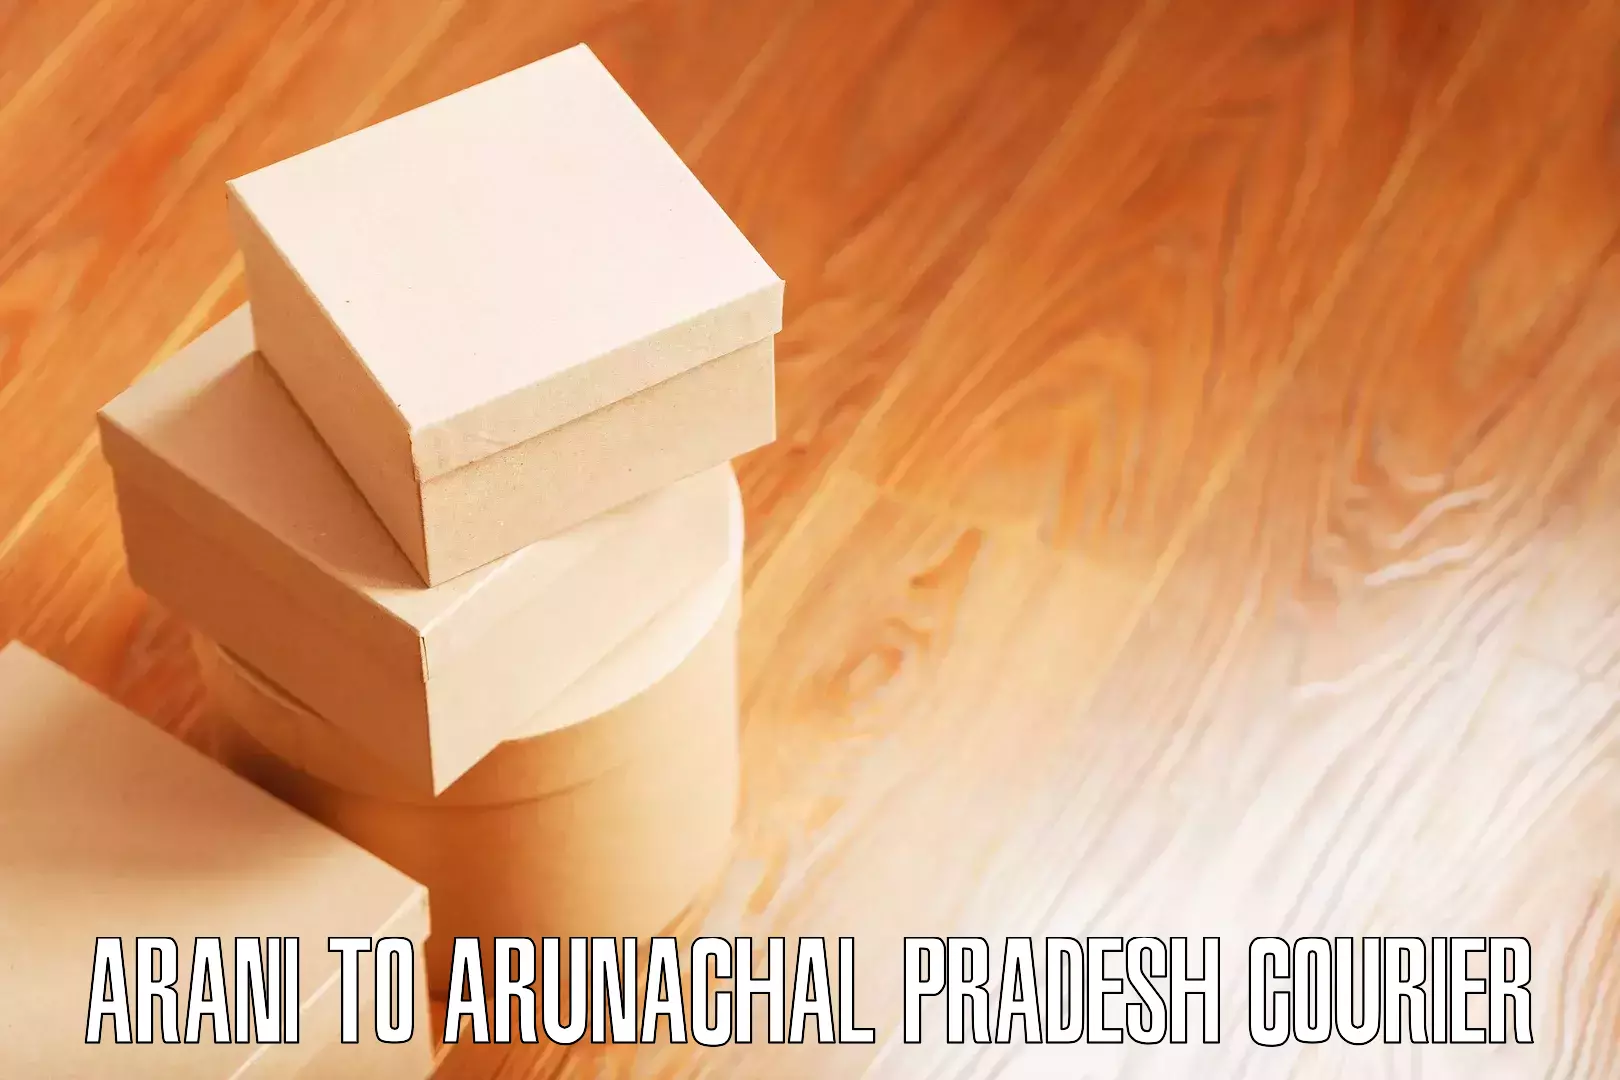 Furniture moving service Arani to Arunachal Pradesh